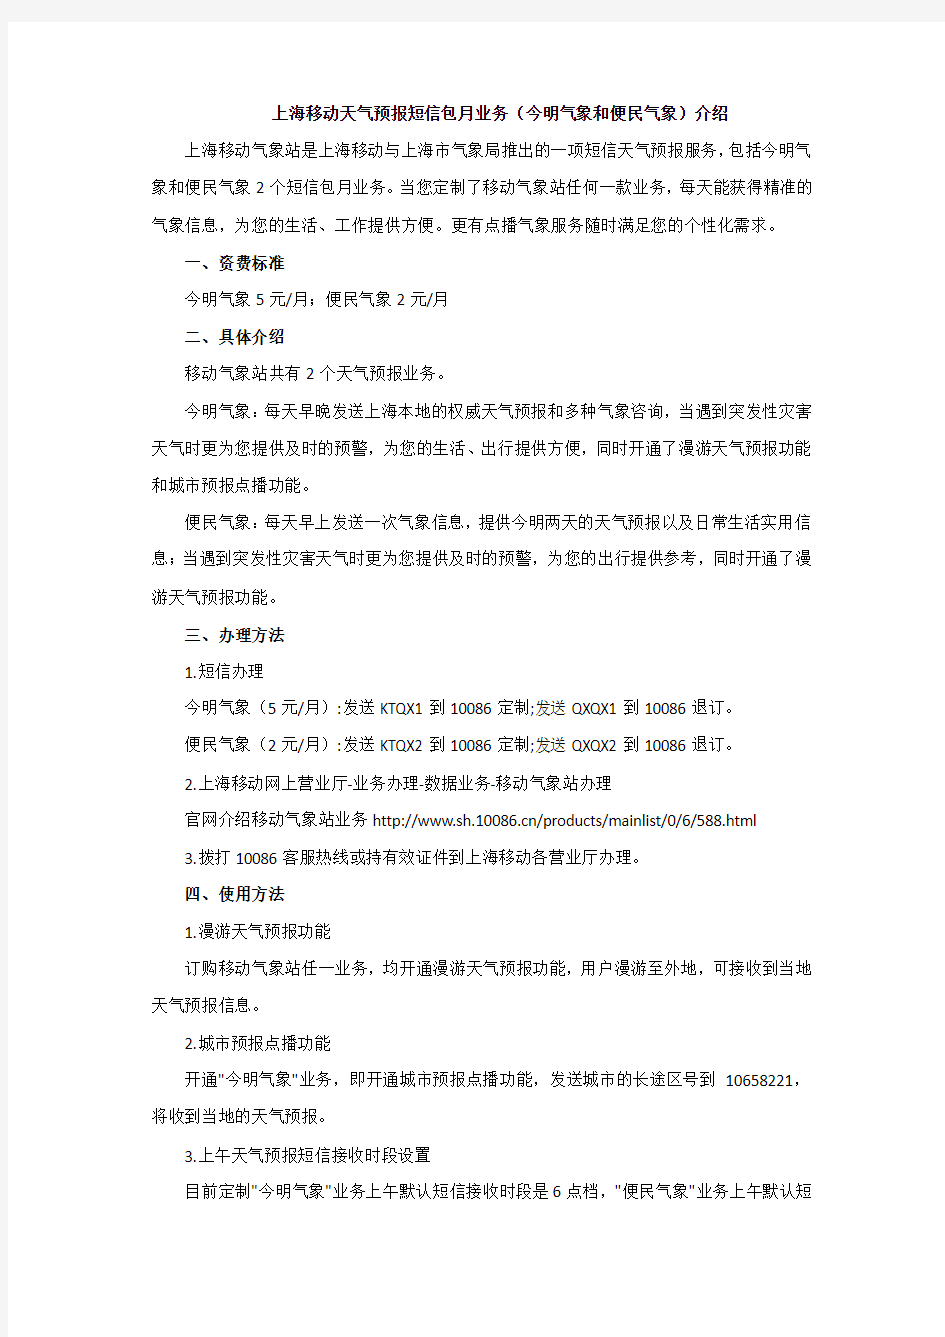 上海移动天气预报短信包月业务(今明气象和便民气象)介绍